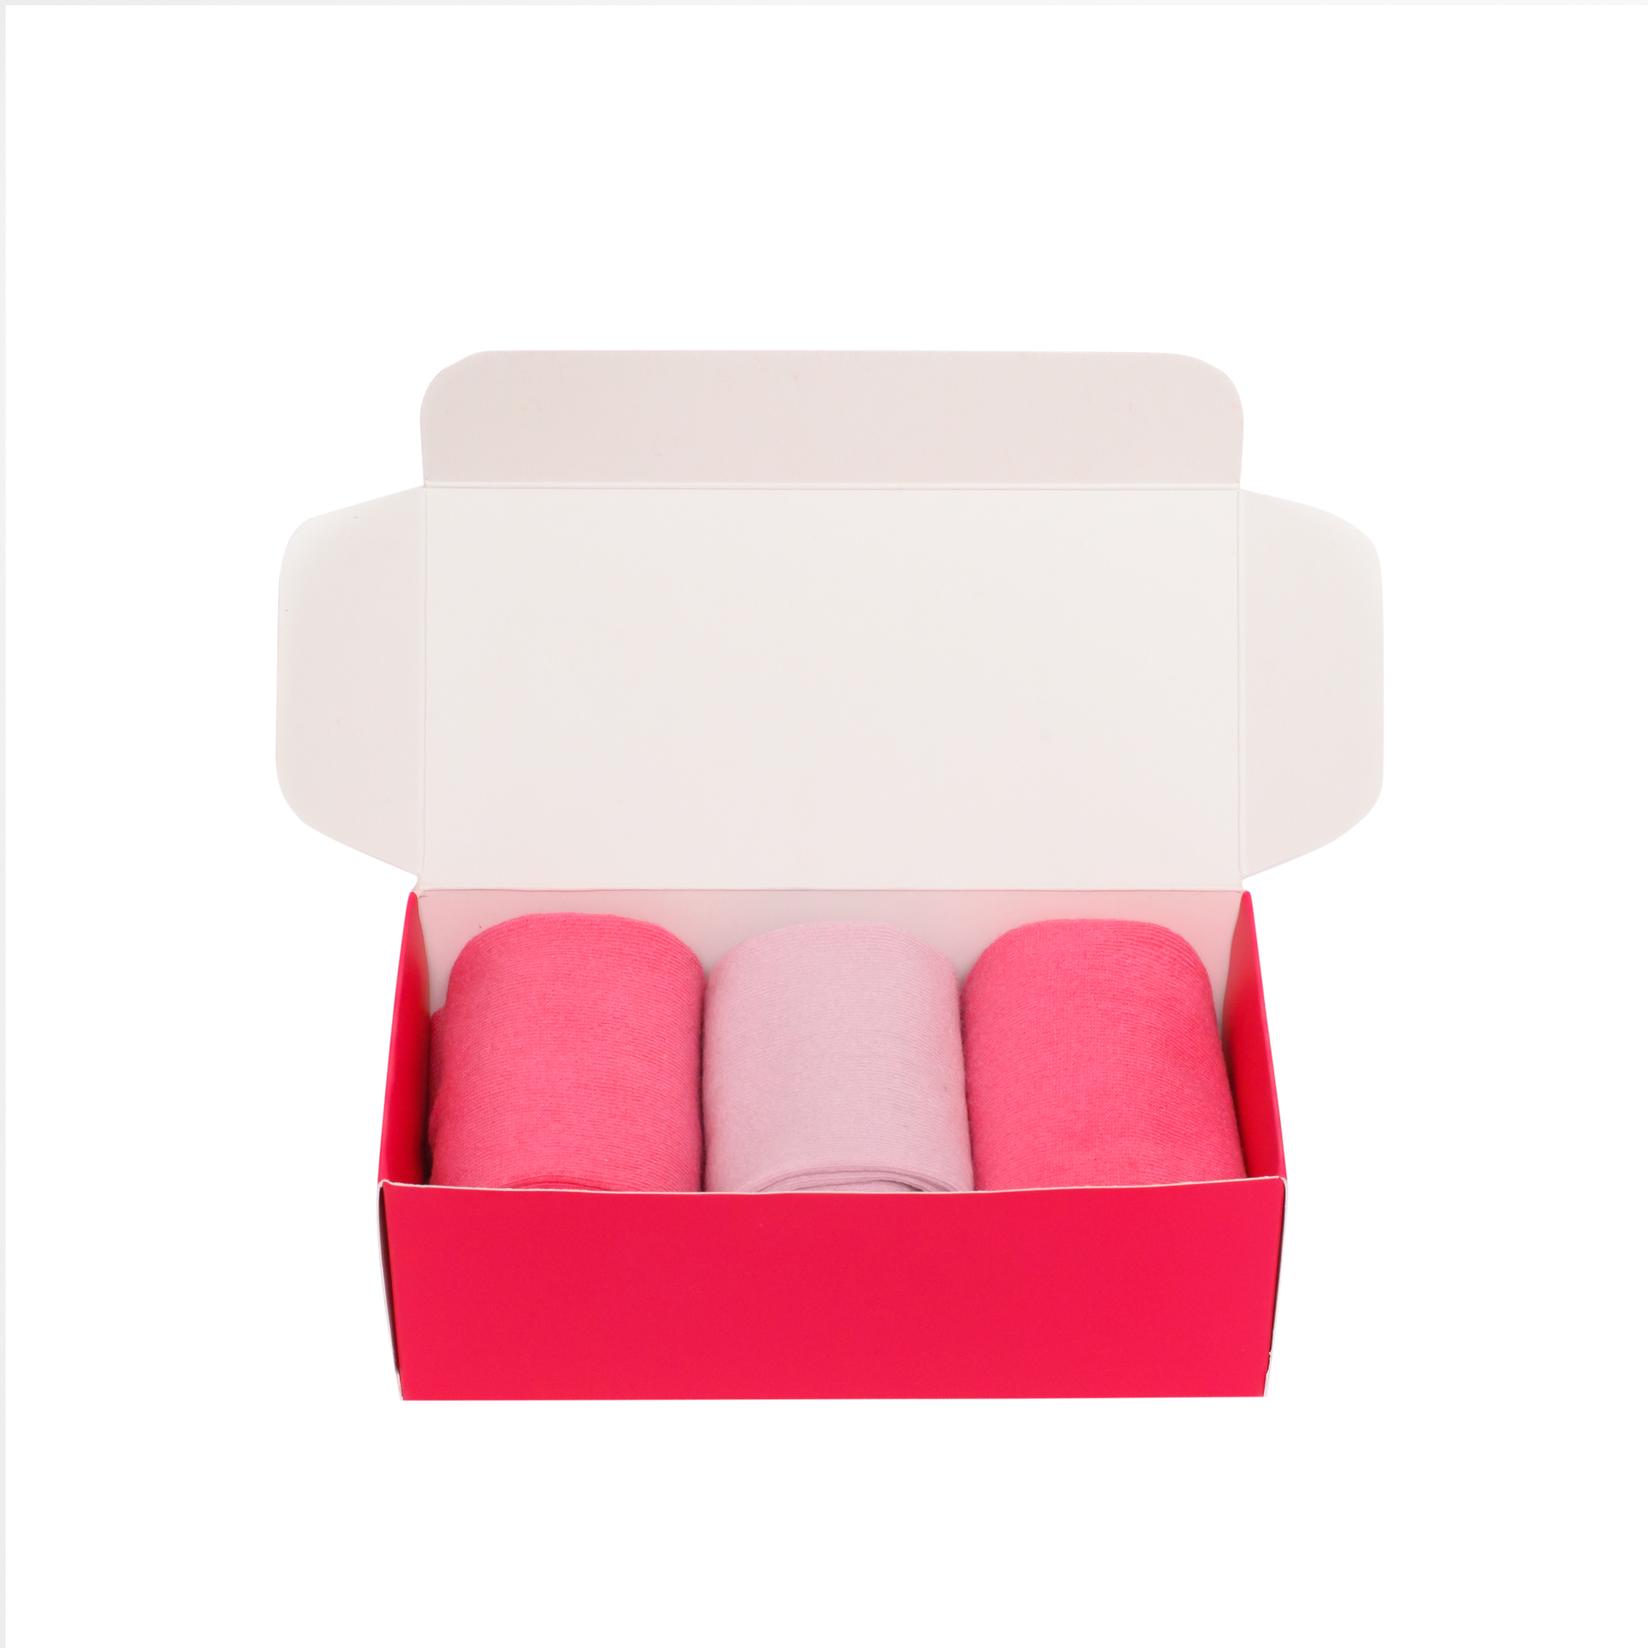 Slike BOX SOCKS Čarape za devojčice 3/1 roze